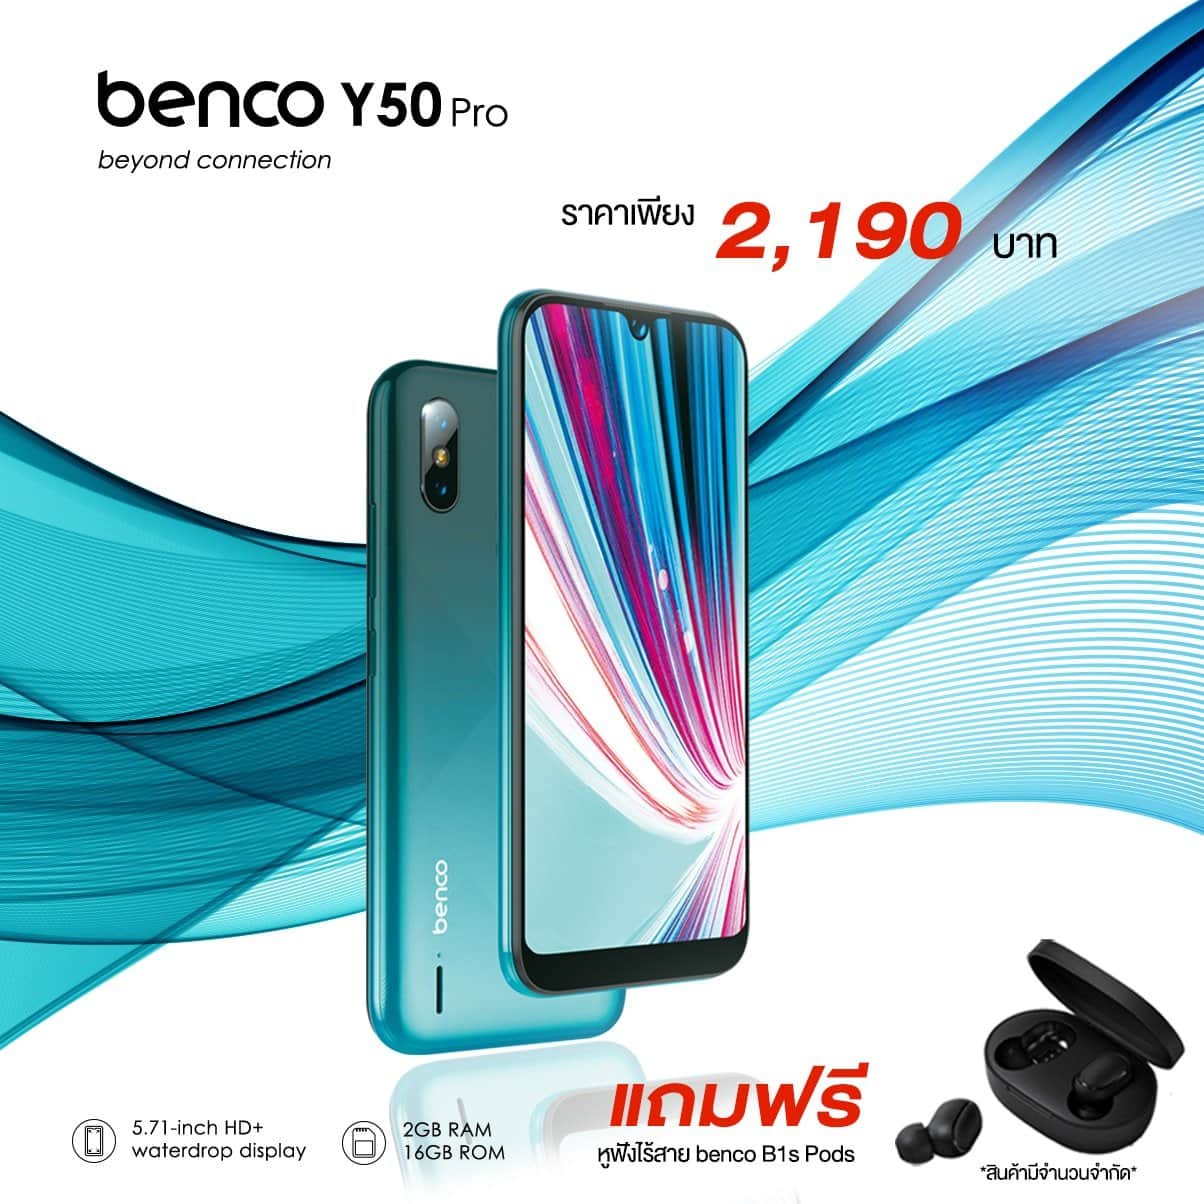 LAVA เปิดตัวสมาร์ทโฟนรุ่น Benco Y50 pro ราคาดีที่สุด 2,190 บาท พร้อมแถมหูฟังไร้สายฟรี!! 1